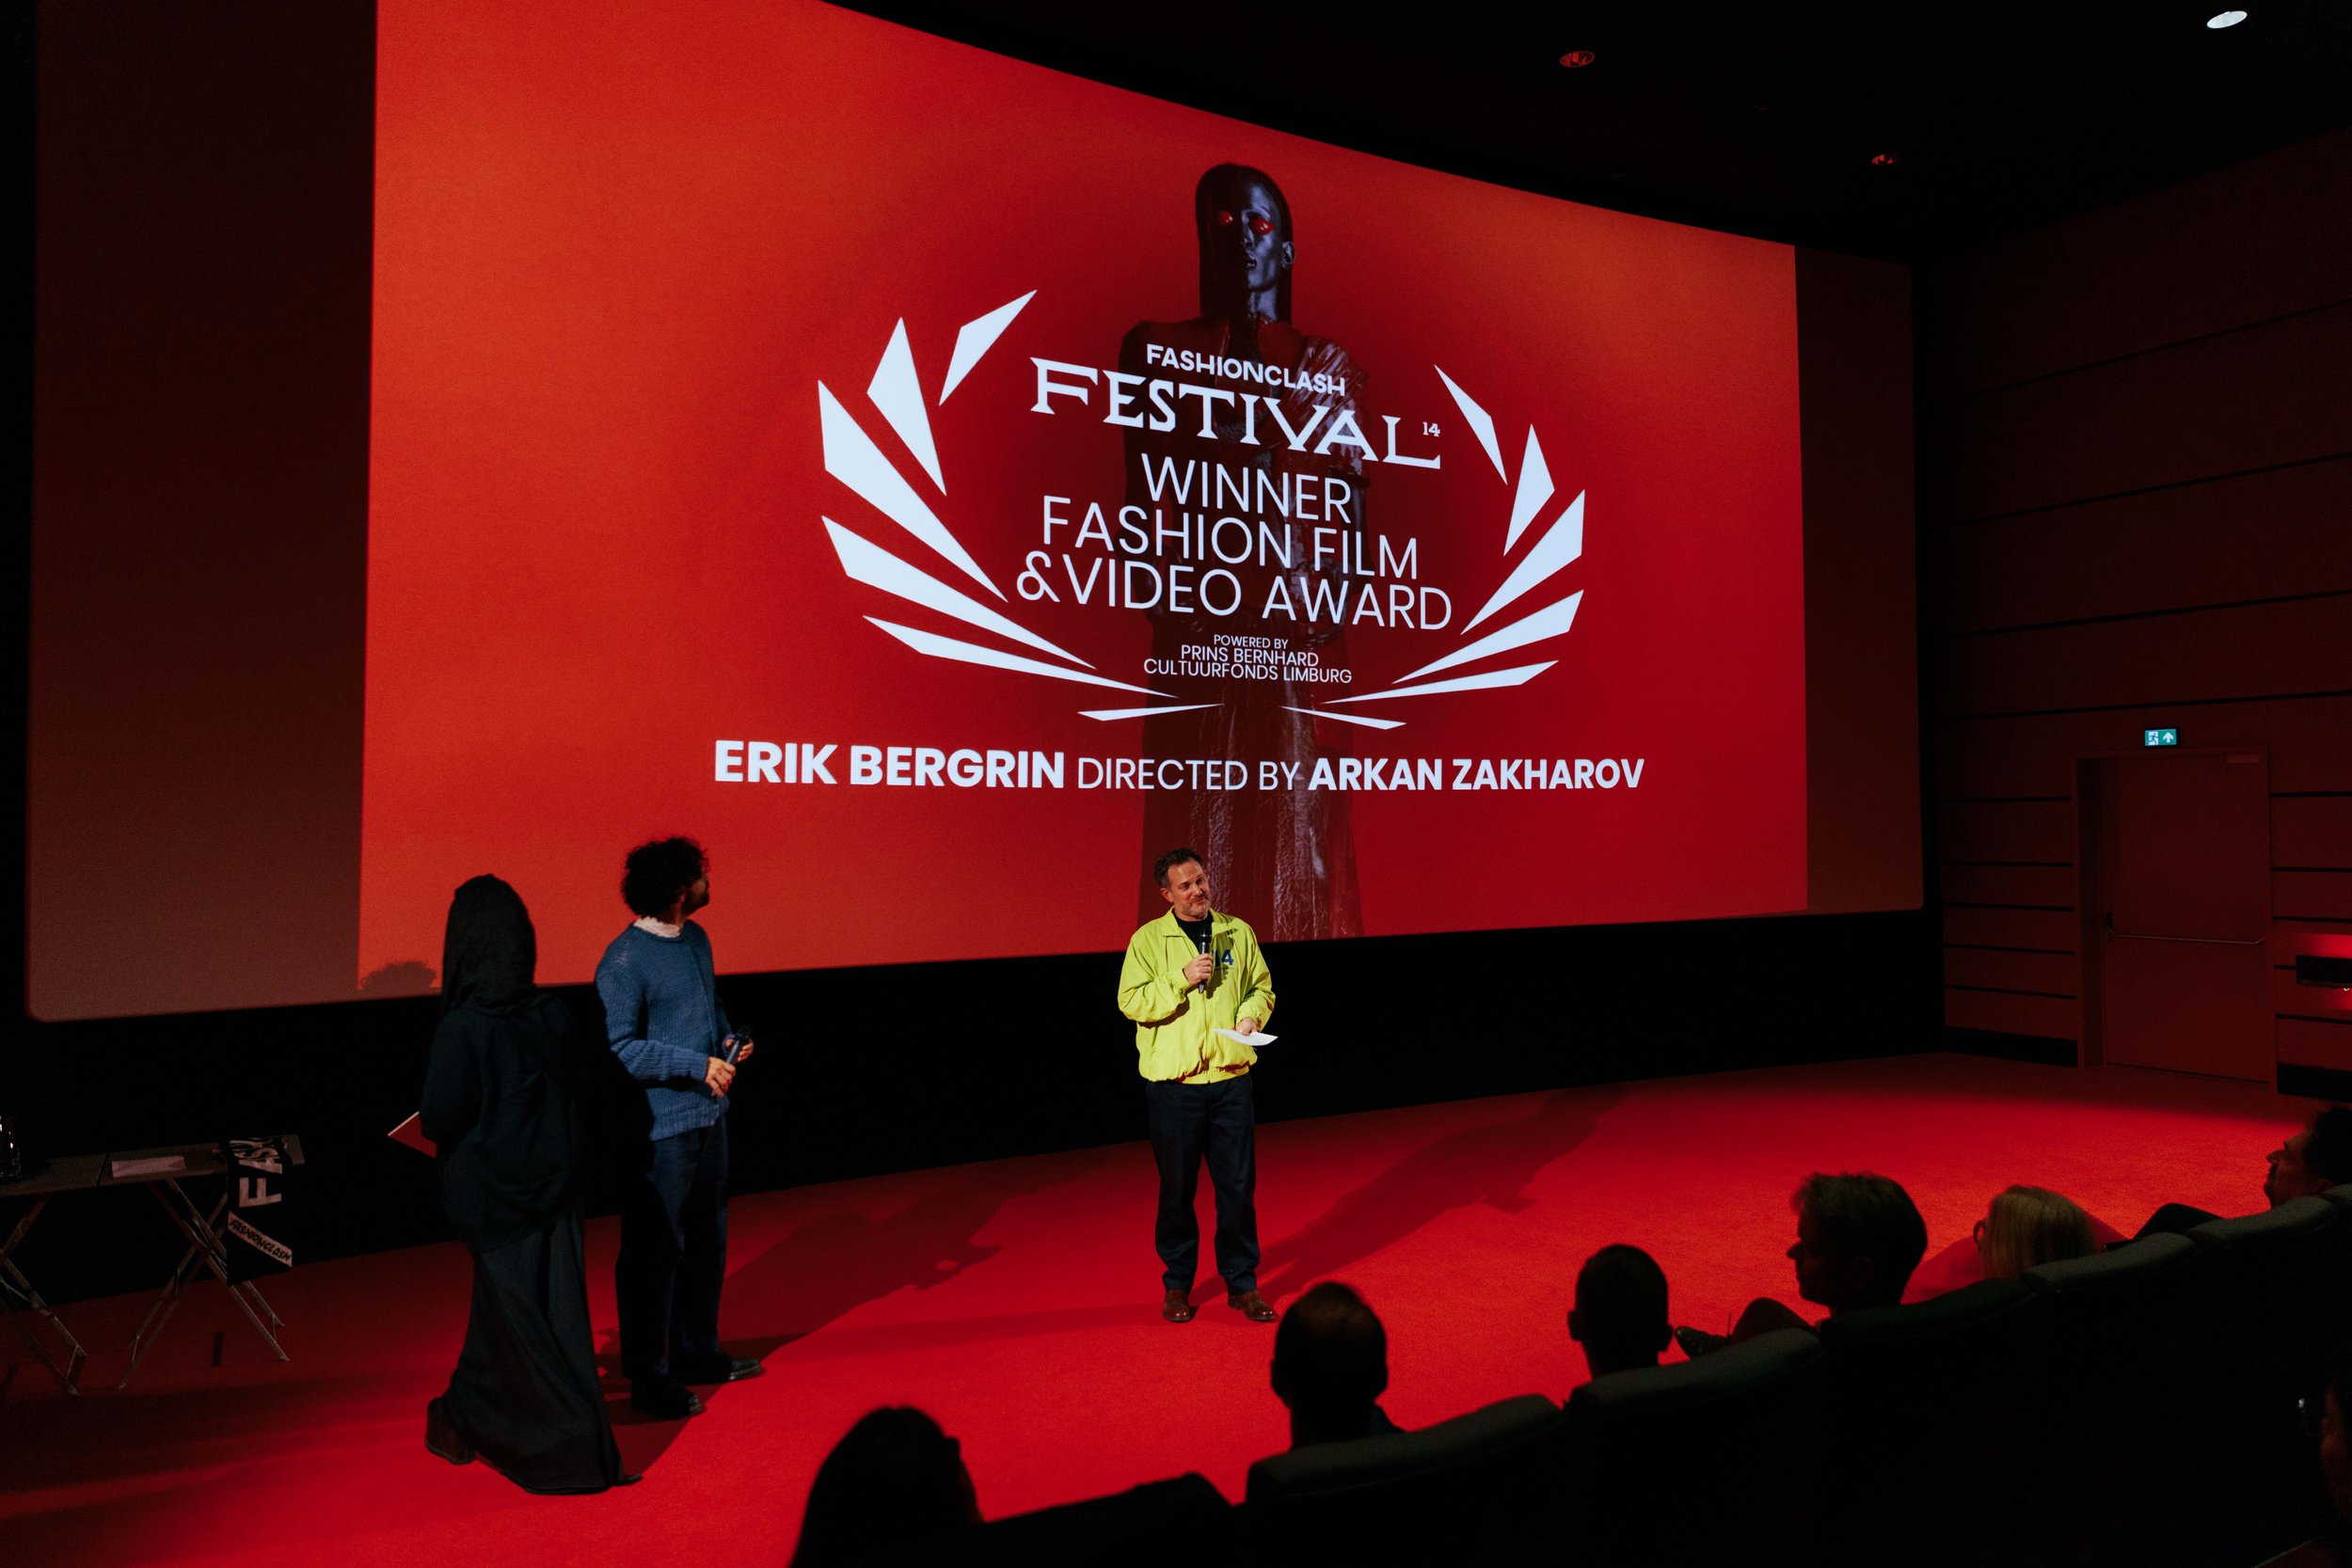 Winner best film, Fashion Film & Video_Erik Bergrin & Arkan Zakharov_www.lauraknipsael.com.jpg